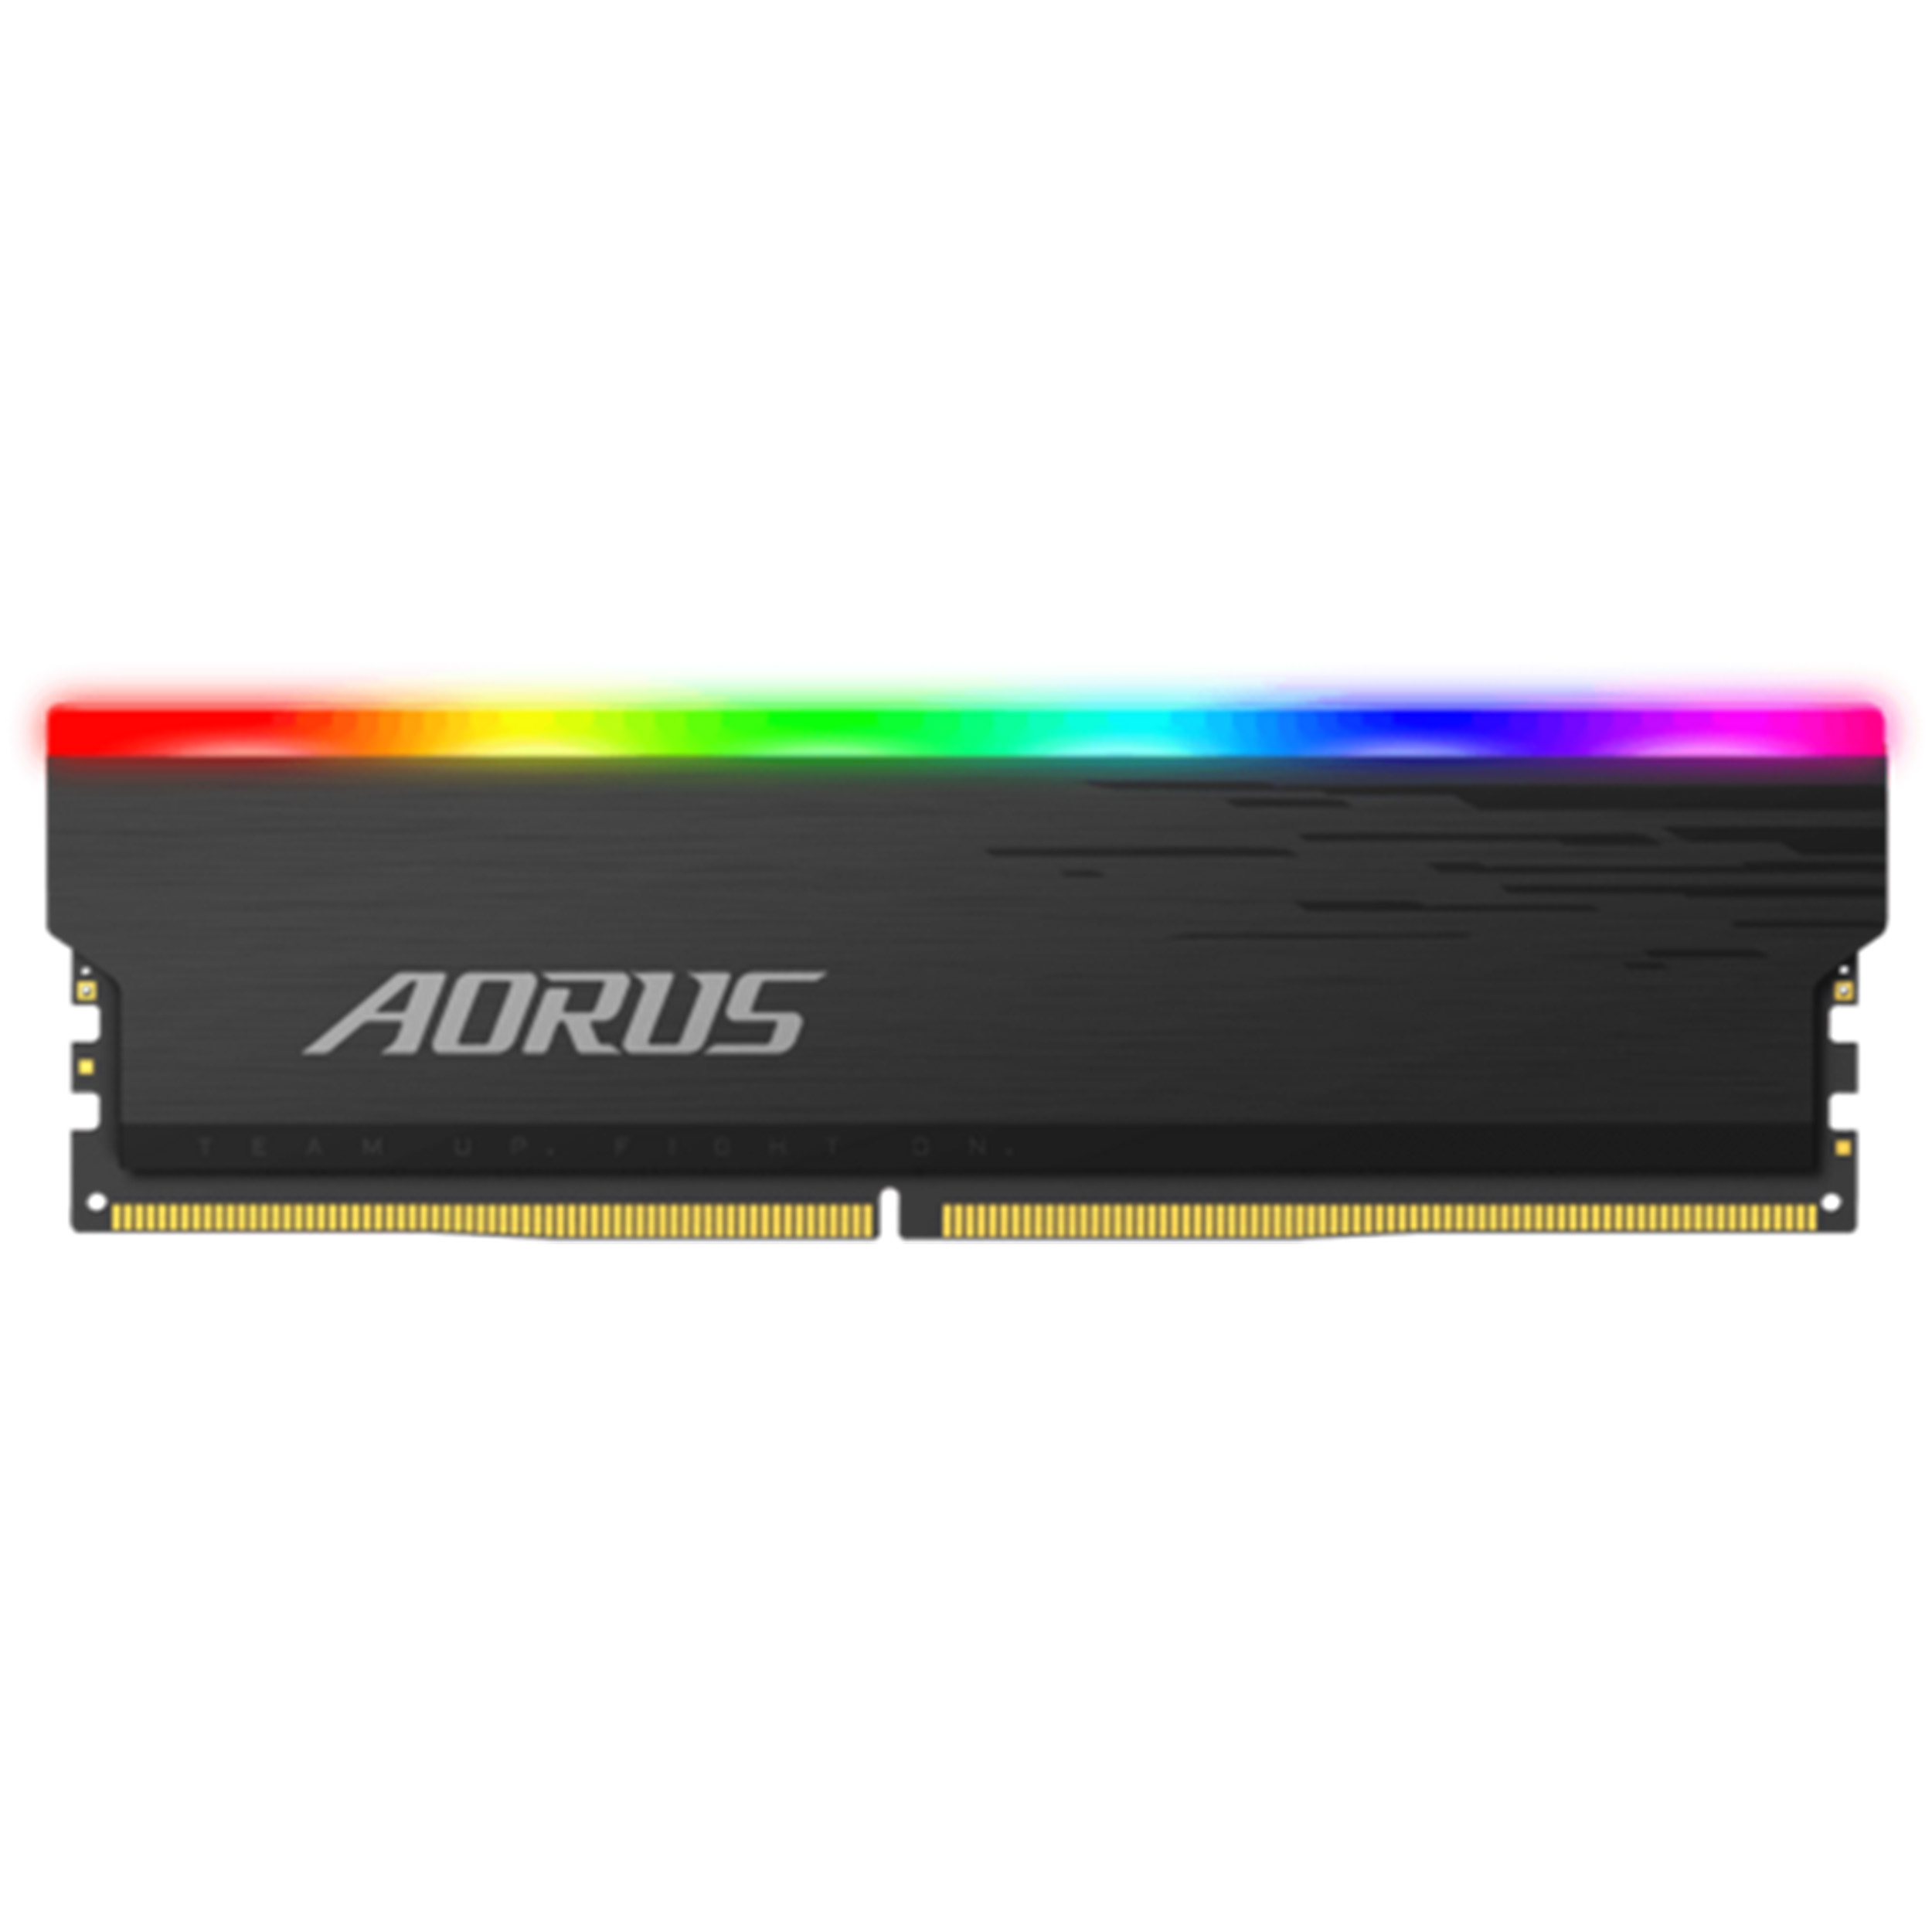 رم دسکتاپ DDR4 دو کاناله 4400 مگاهرتز CL19 گیگابایت آروس مدل AORUS ظرفیت 16 گیگابایت